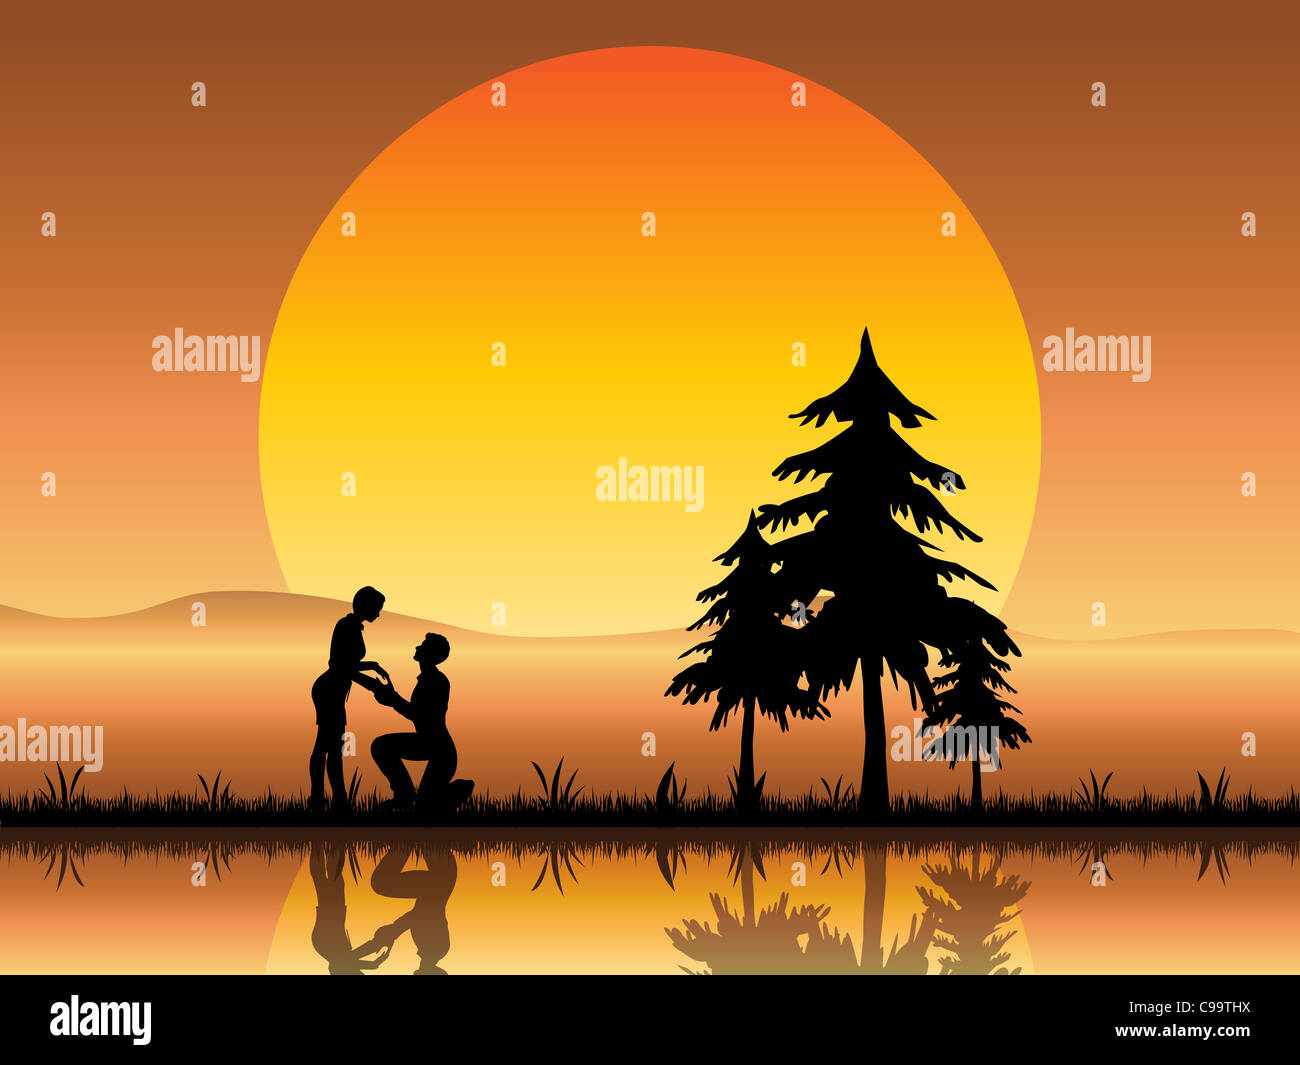 Eine romantische Silhouette eines jungen Liebespaares unter einem schönen orange Sonnenuntergang vorschlägt. Stockfoto